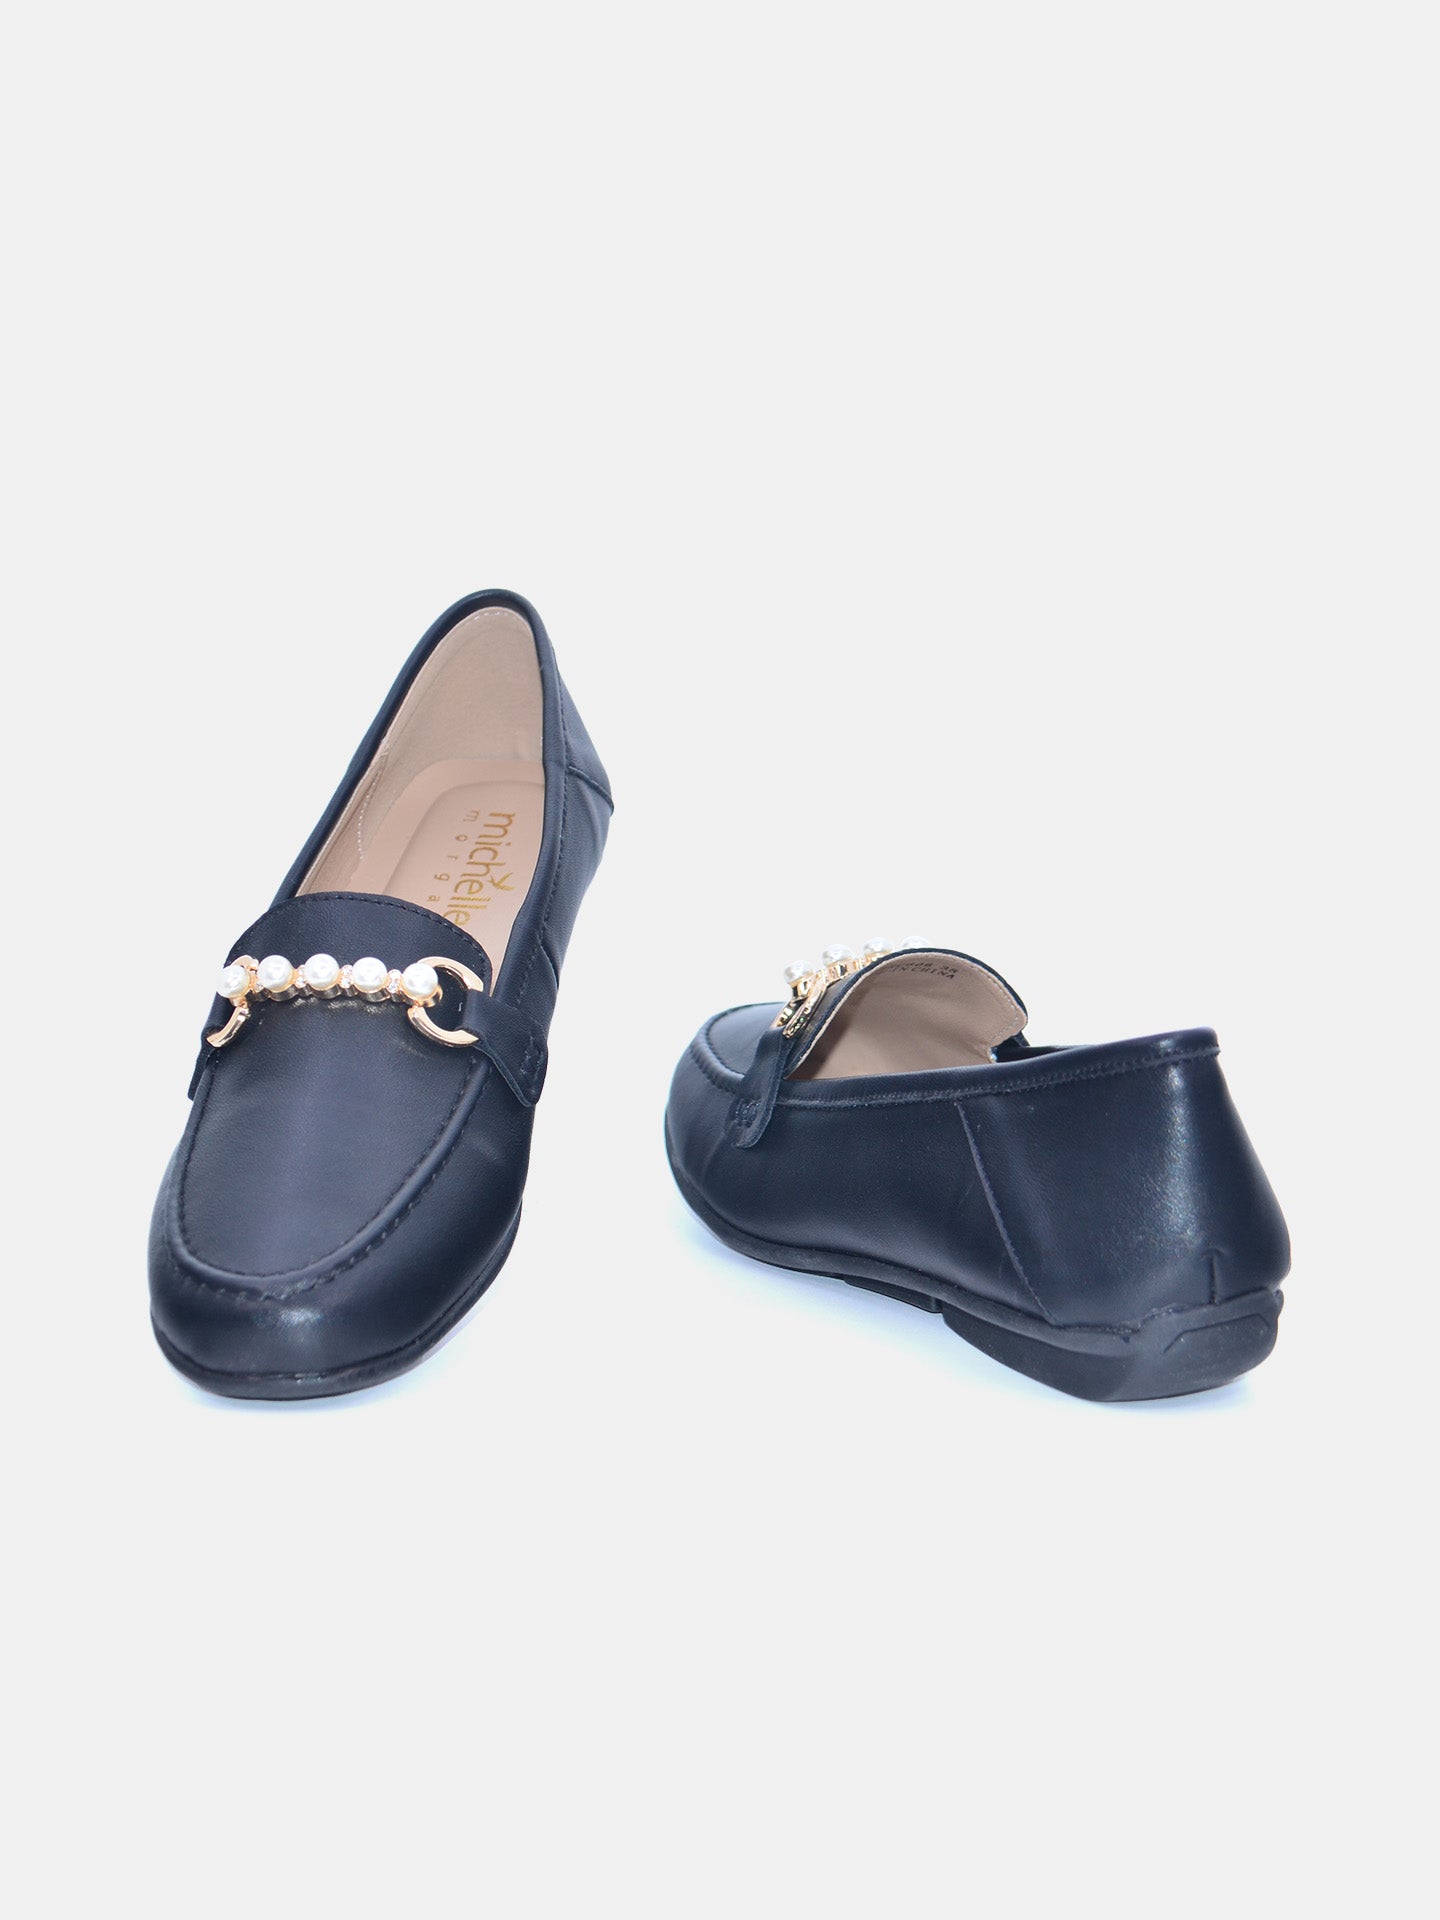 Michelle Morgan 219RC606 Women's Flat Sandals #color_Black